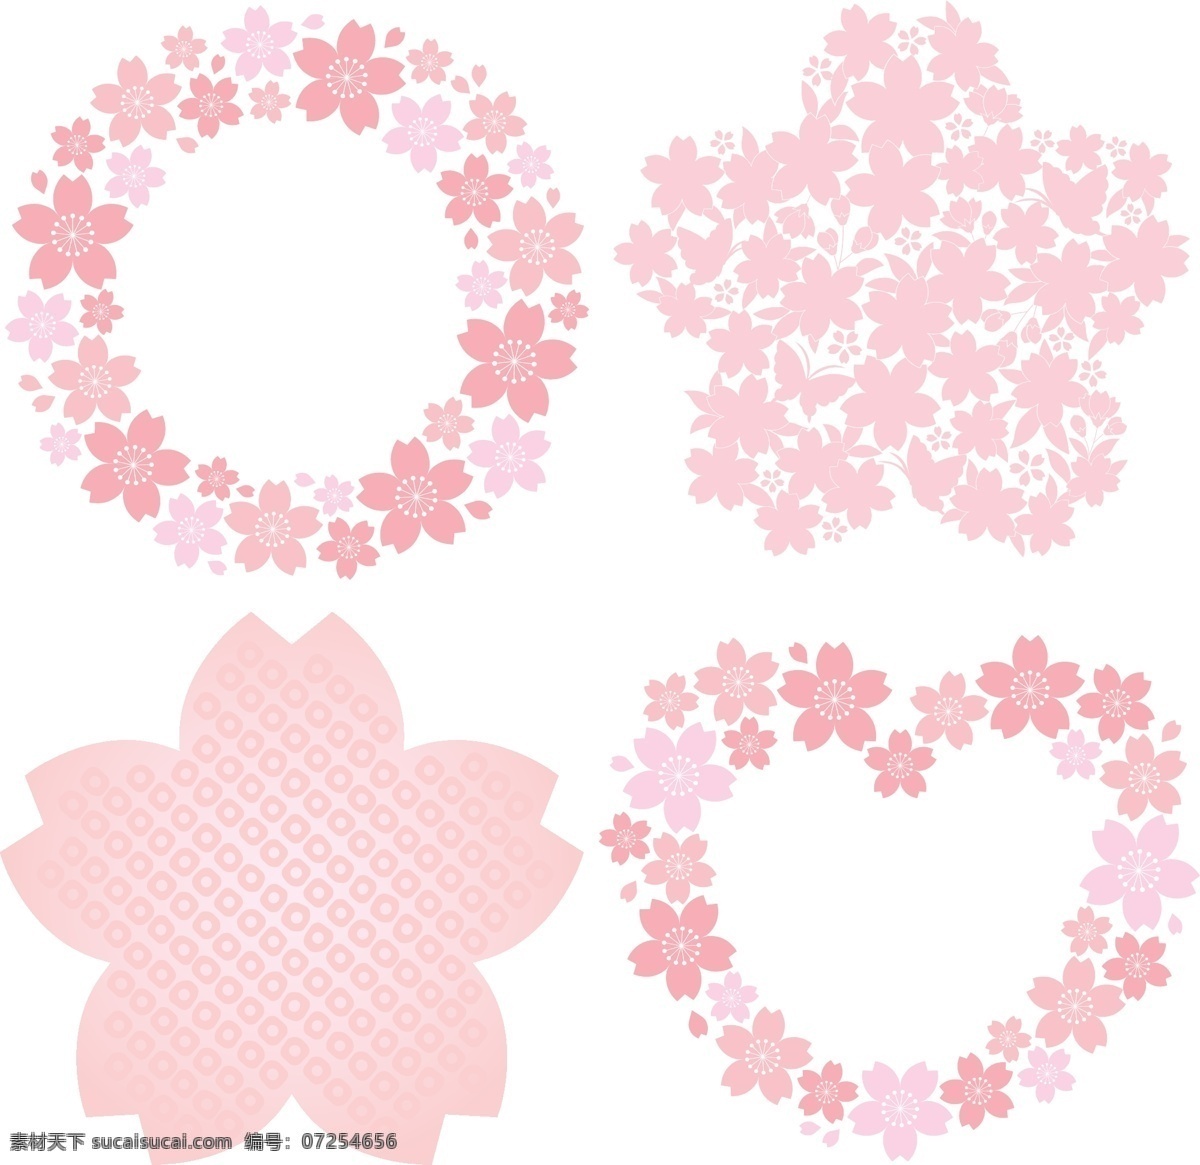 粉色 花卉 装饰 矢量 花朵 花环 爱心 心型 心形 卡片 插画 背景 海报 画册 矢量植物 生物世界 花草 白色